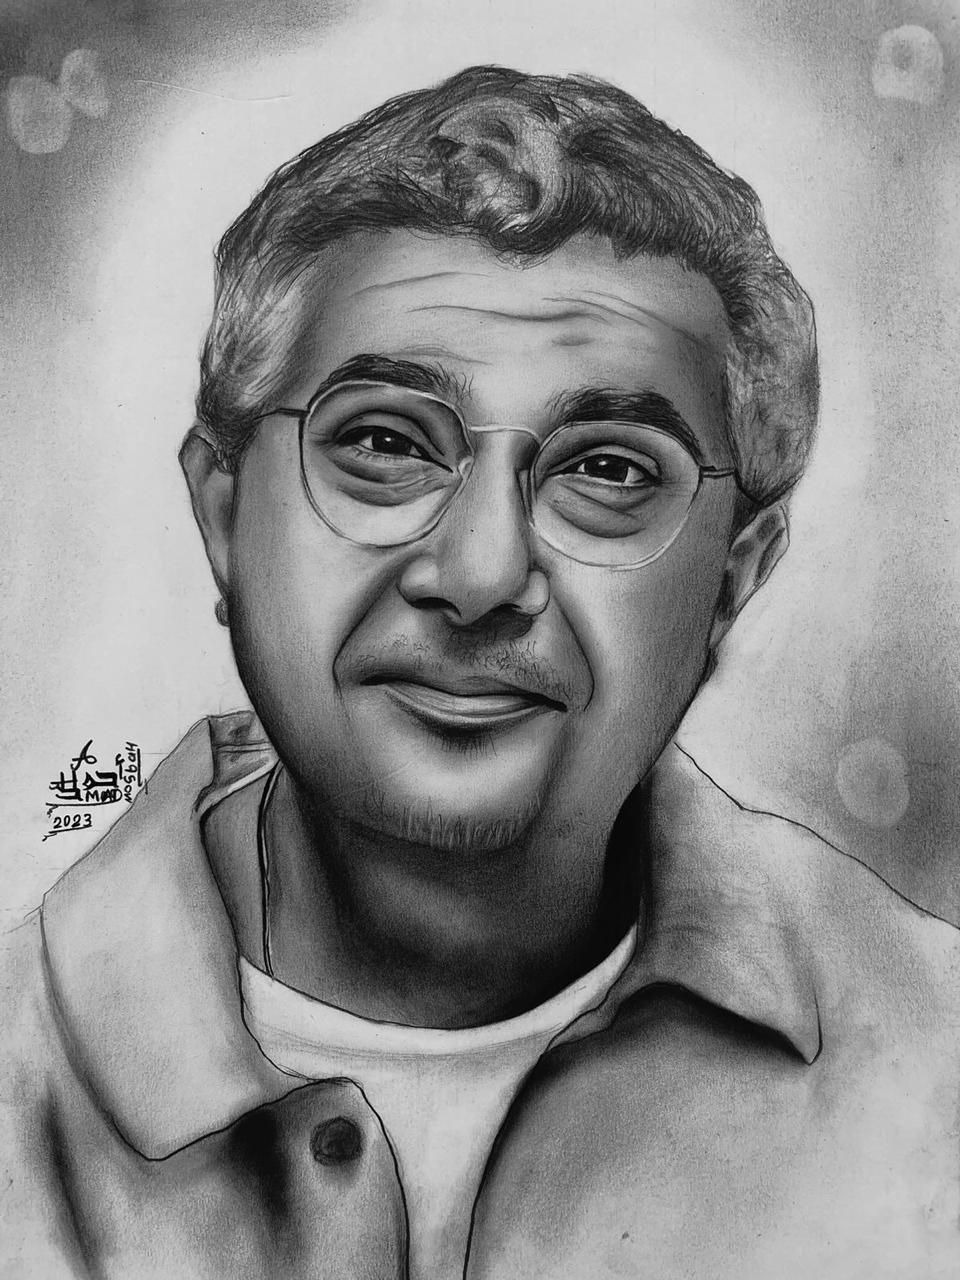 الفنان ماجد الكدواني للفنان احمد مصباح